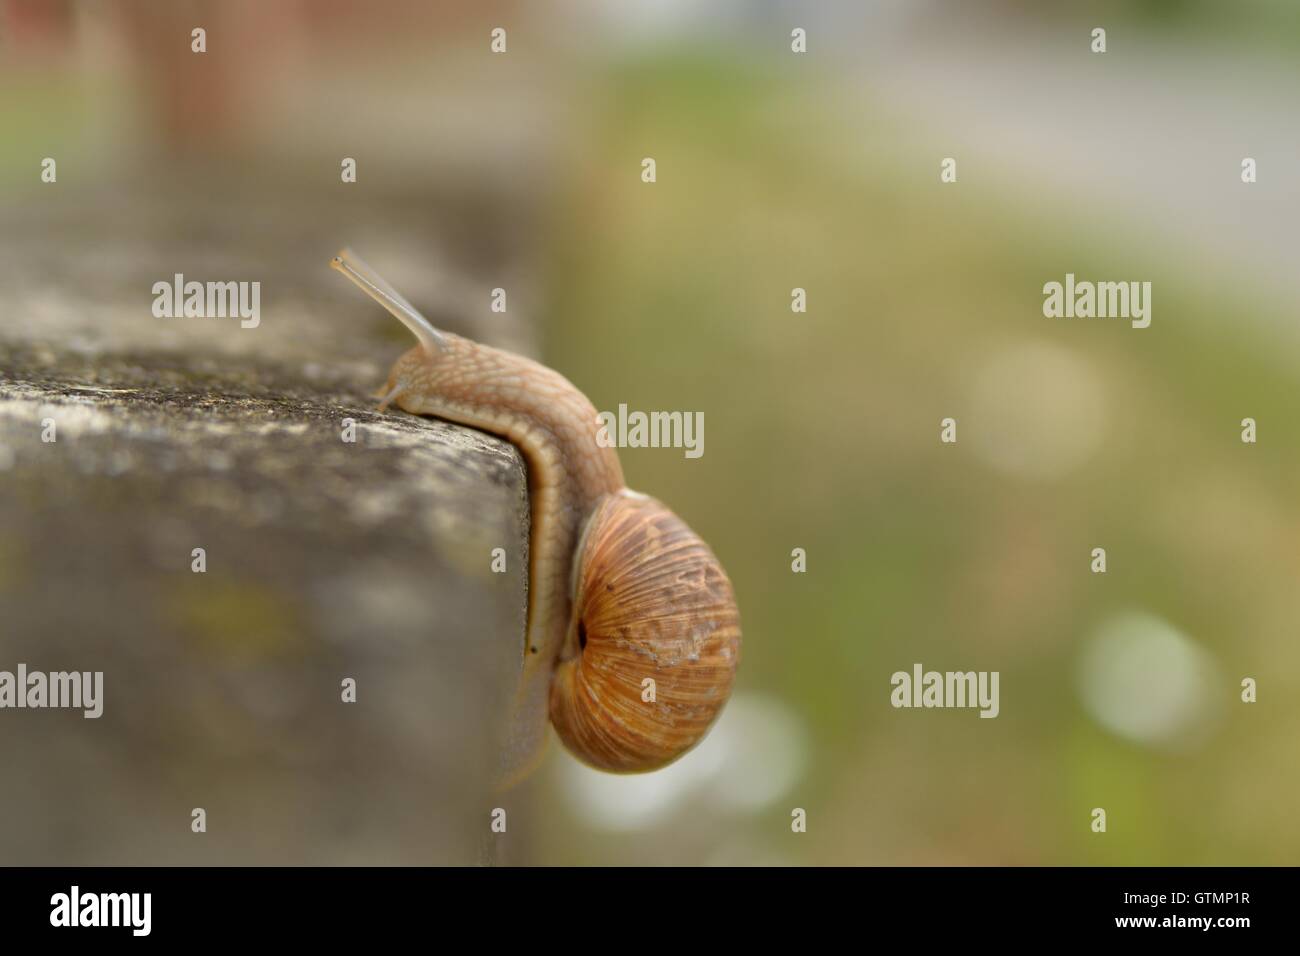 Land snail climb a right angle wall Stock Photo